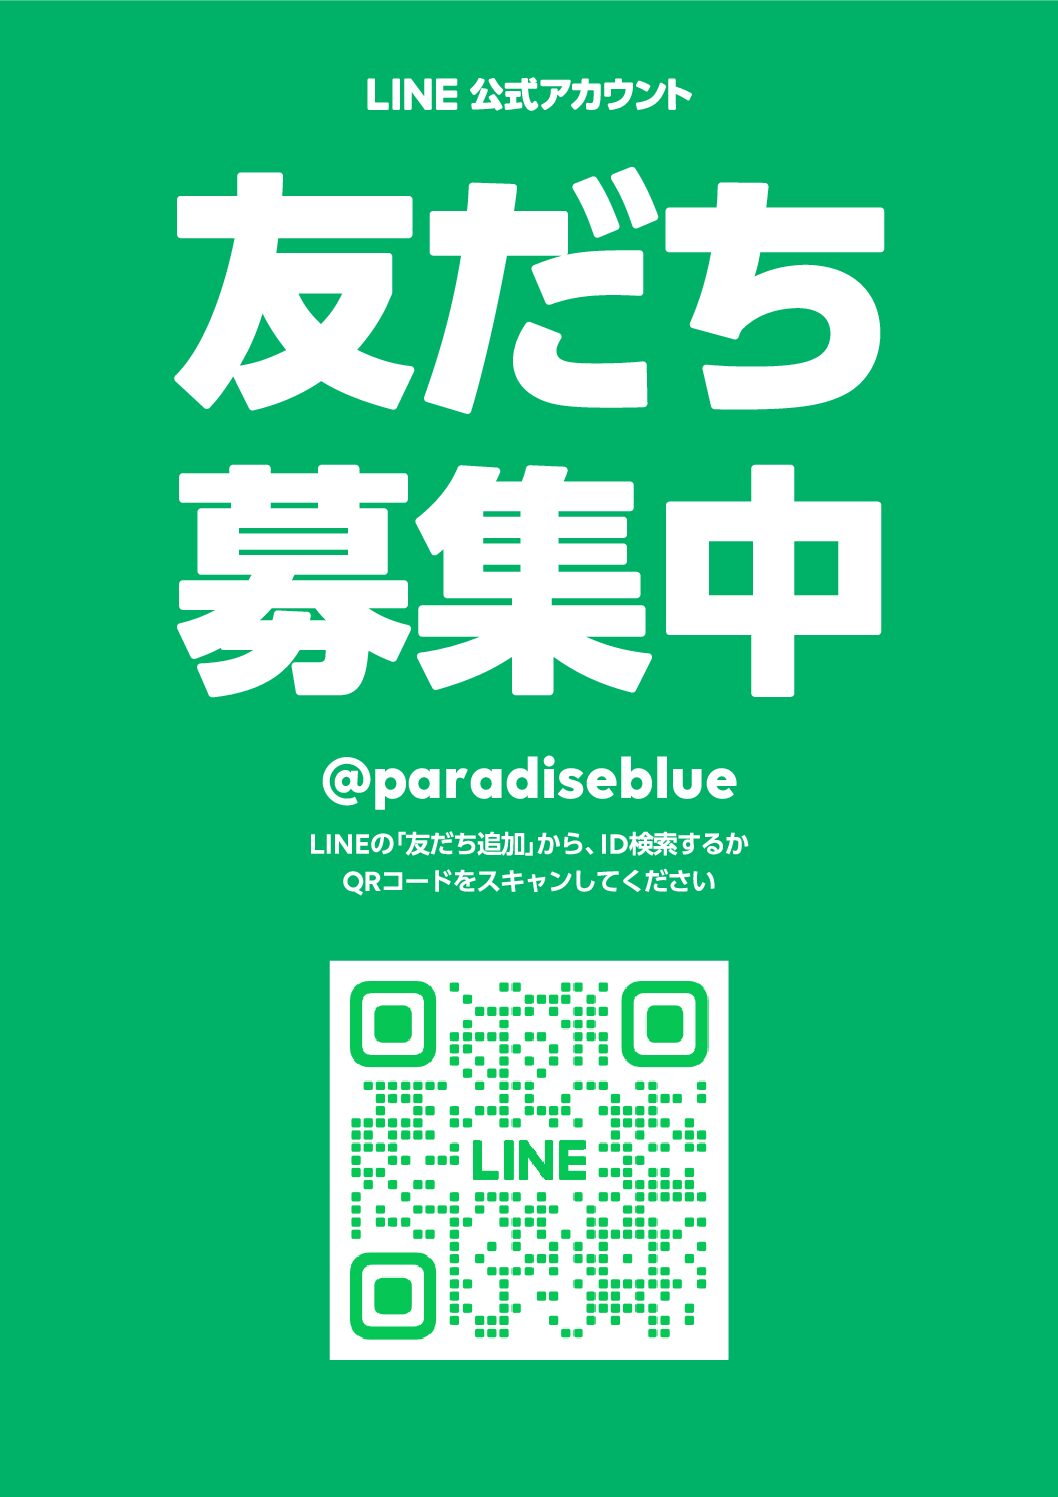 パラブルeギフトカード【ParadiseBLUE】